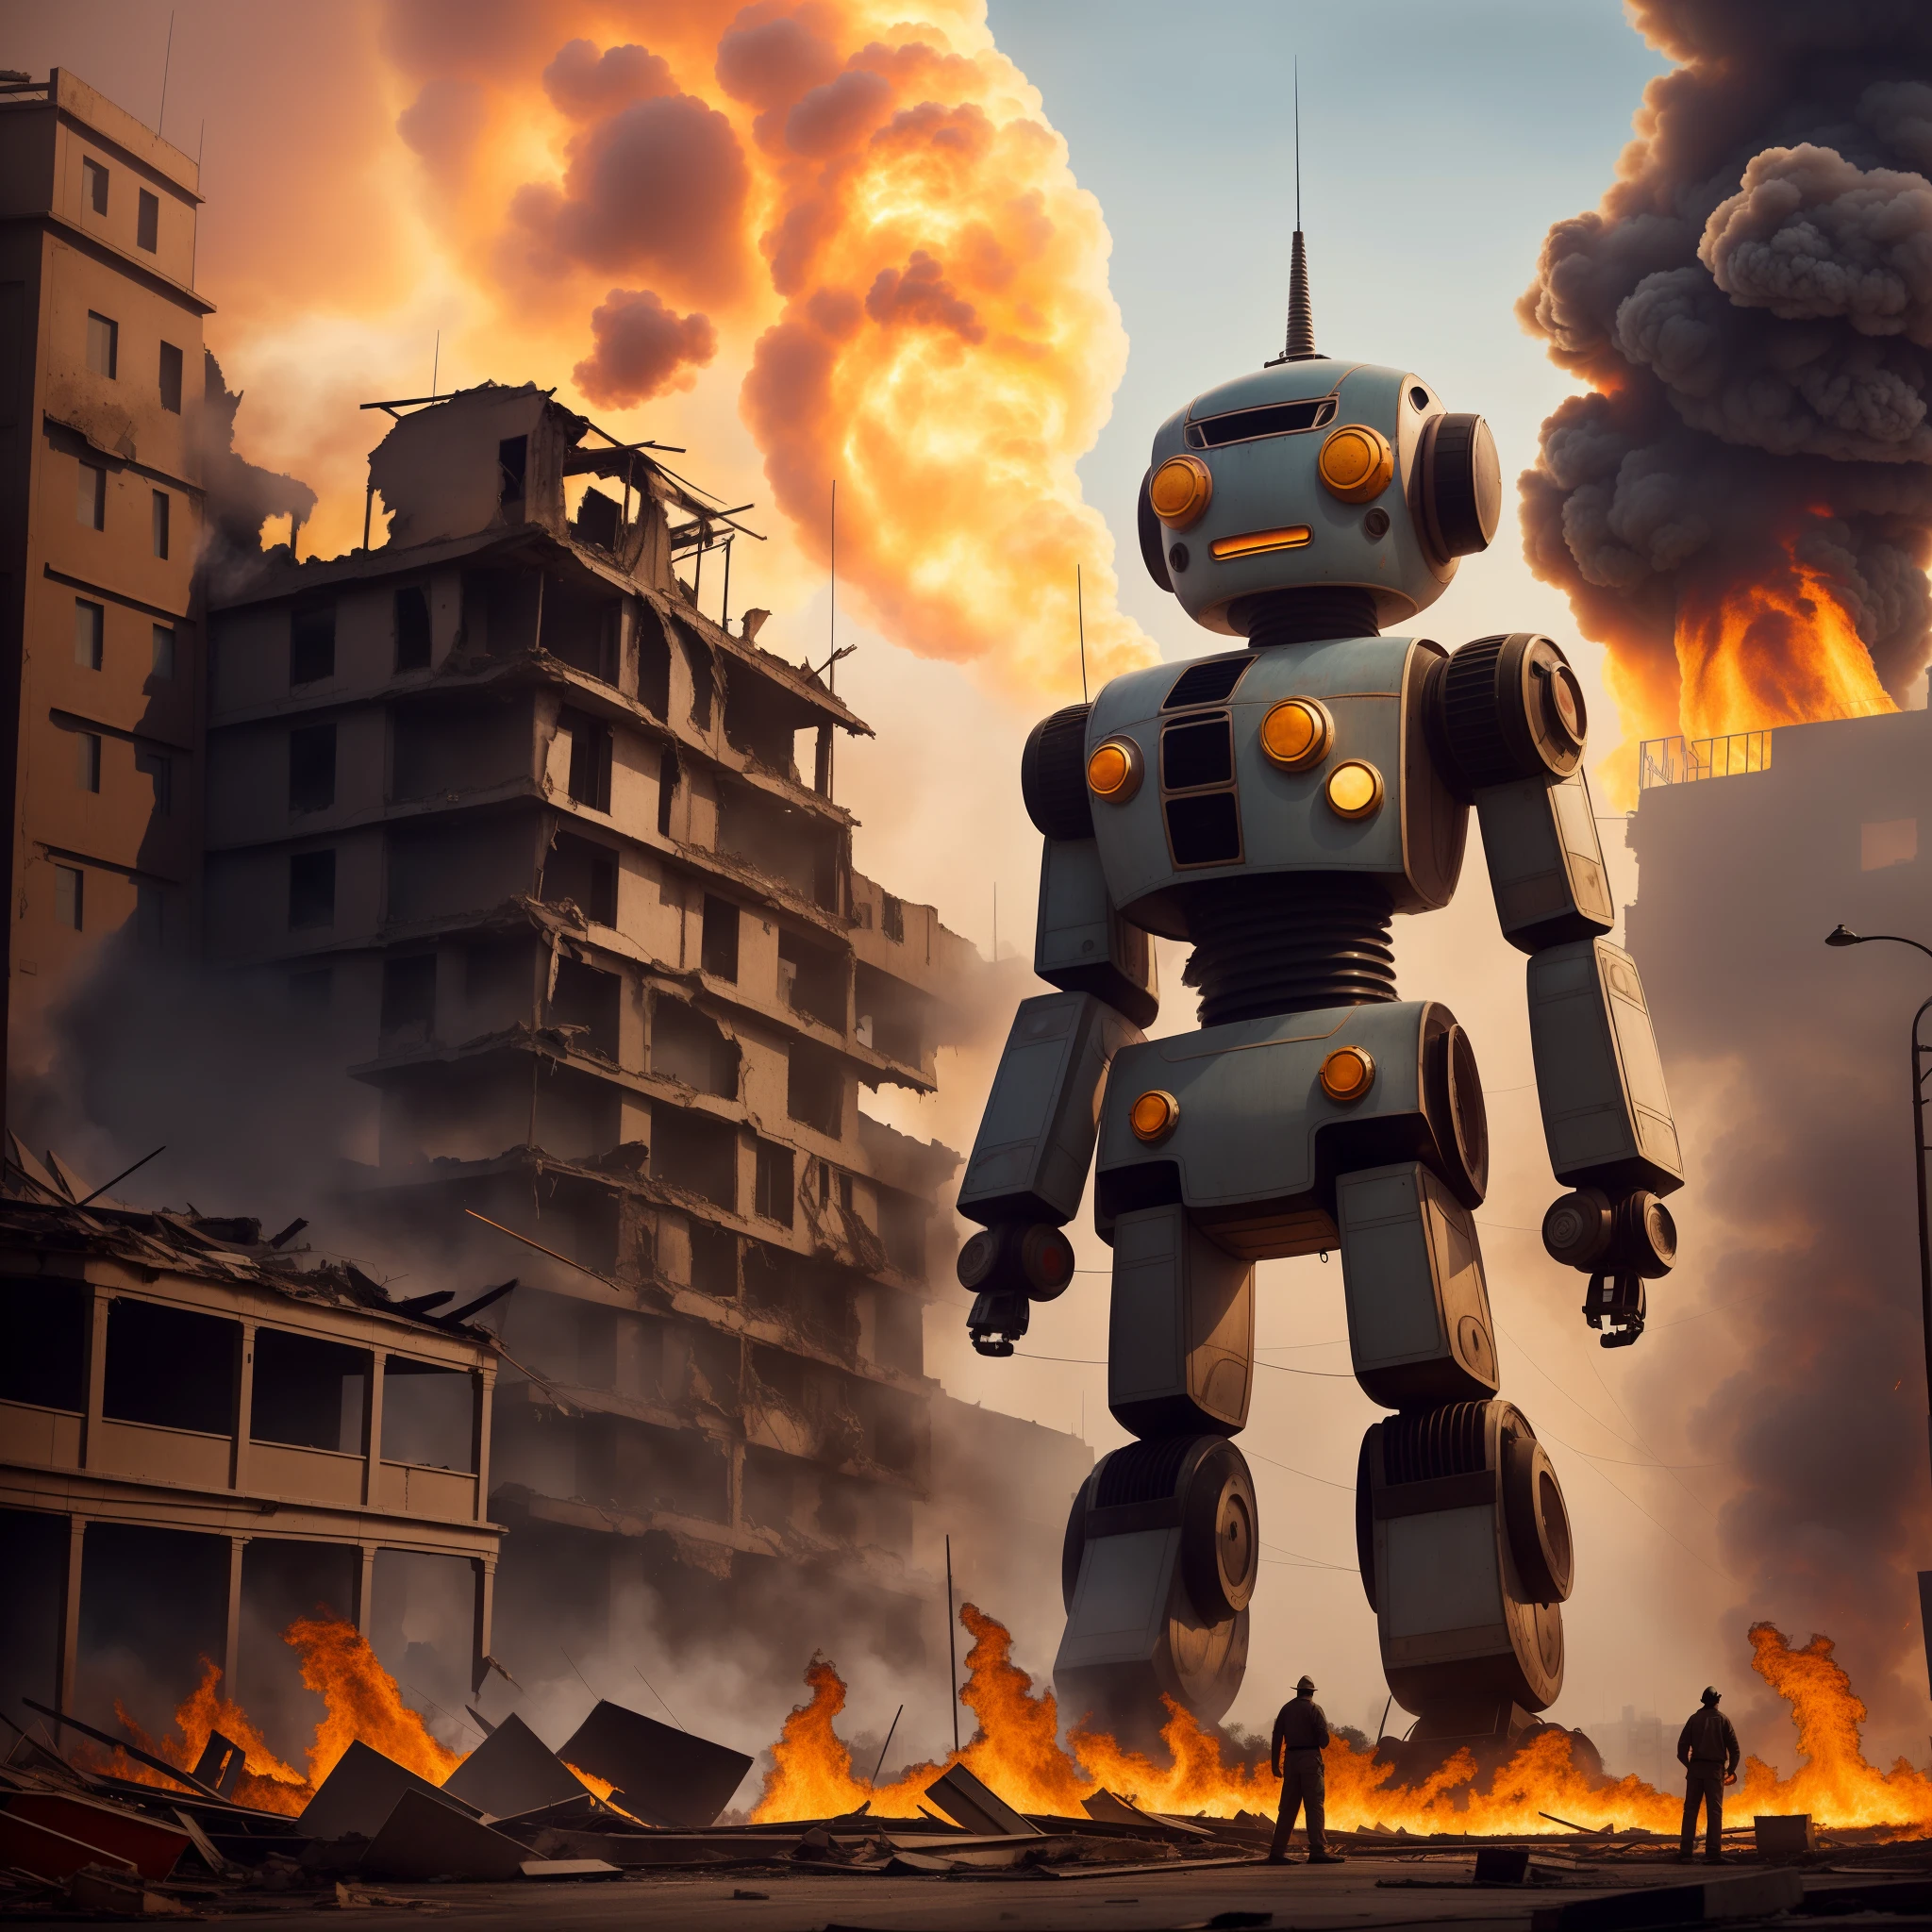 1 个 1000 米高的超大复古玩具机器人，大量城市建筑受损，废墟，火势正在熊熊燃烧，(((公民避之不及)))，小雨，安全的，极其详细